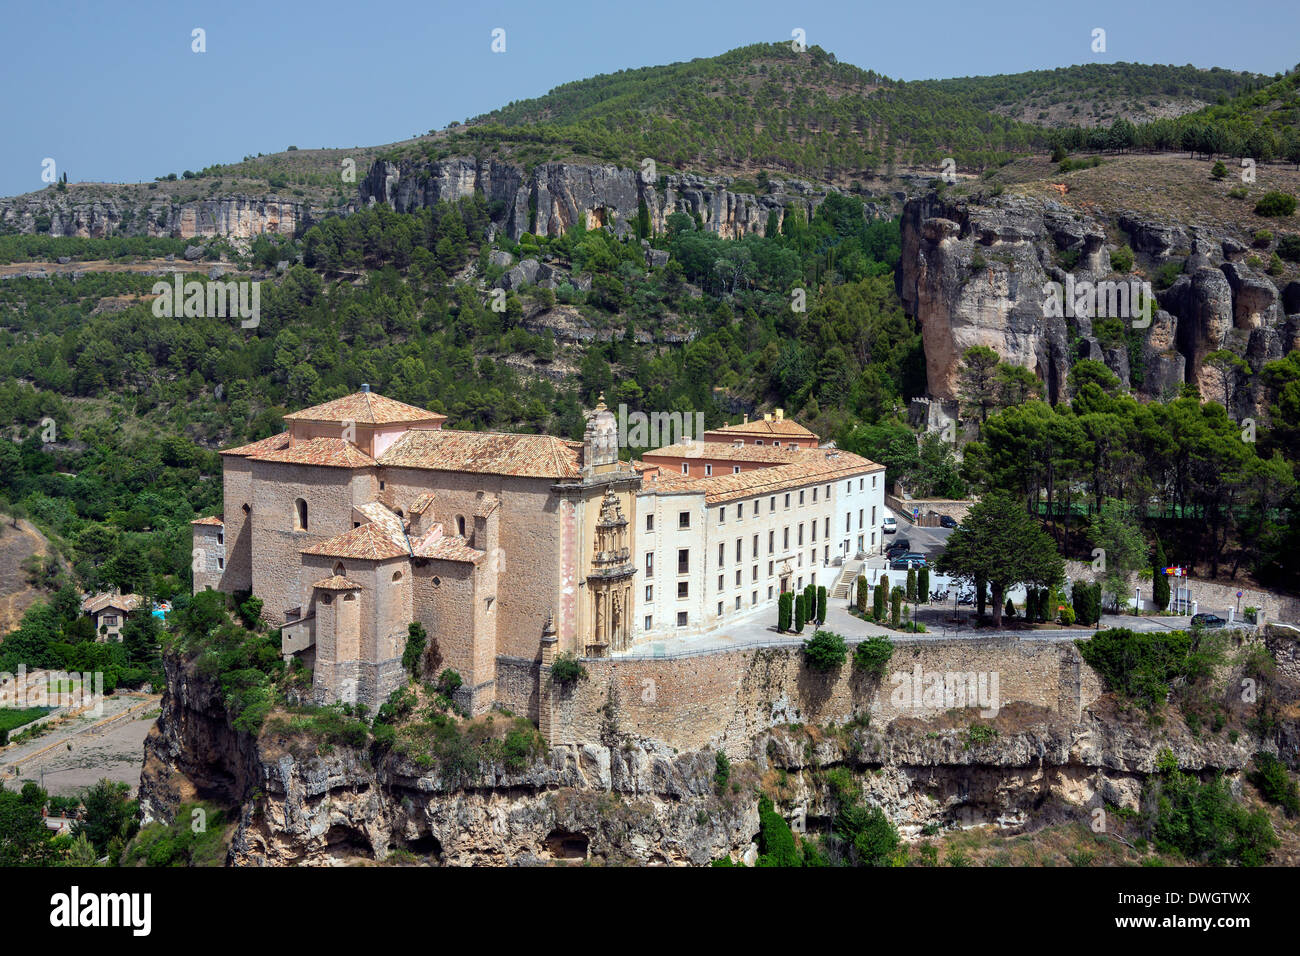 Monastère de Cuenca (maintenant un hôtel - Parador de Cuenca) dans la ville de Cuenca dans la région de Macha du centre de l'Espagne. Banque D'Images